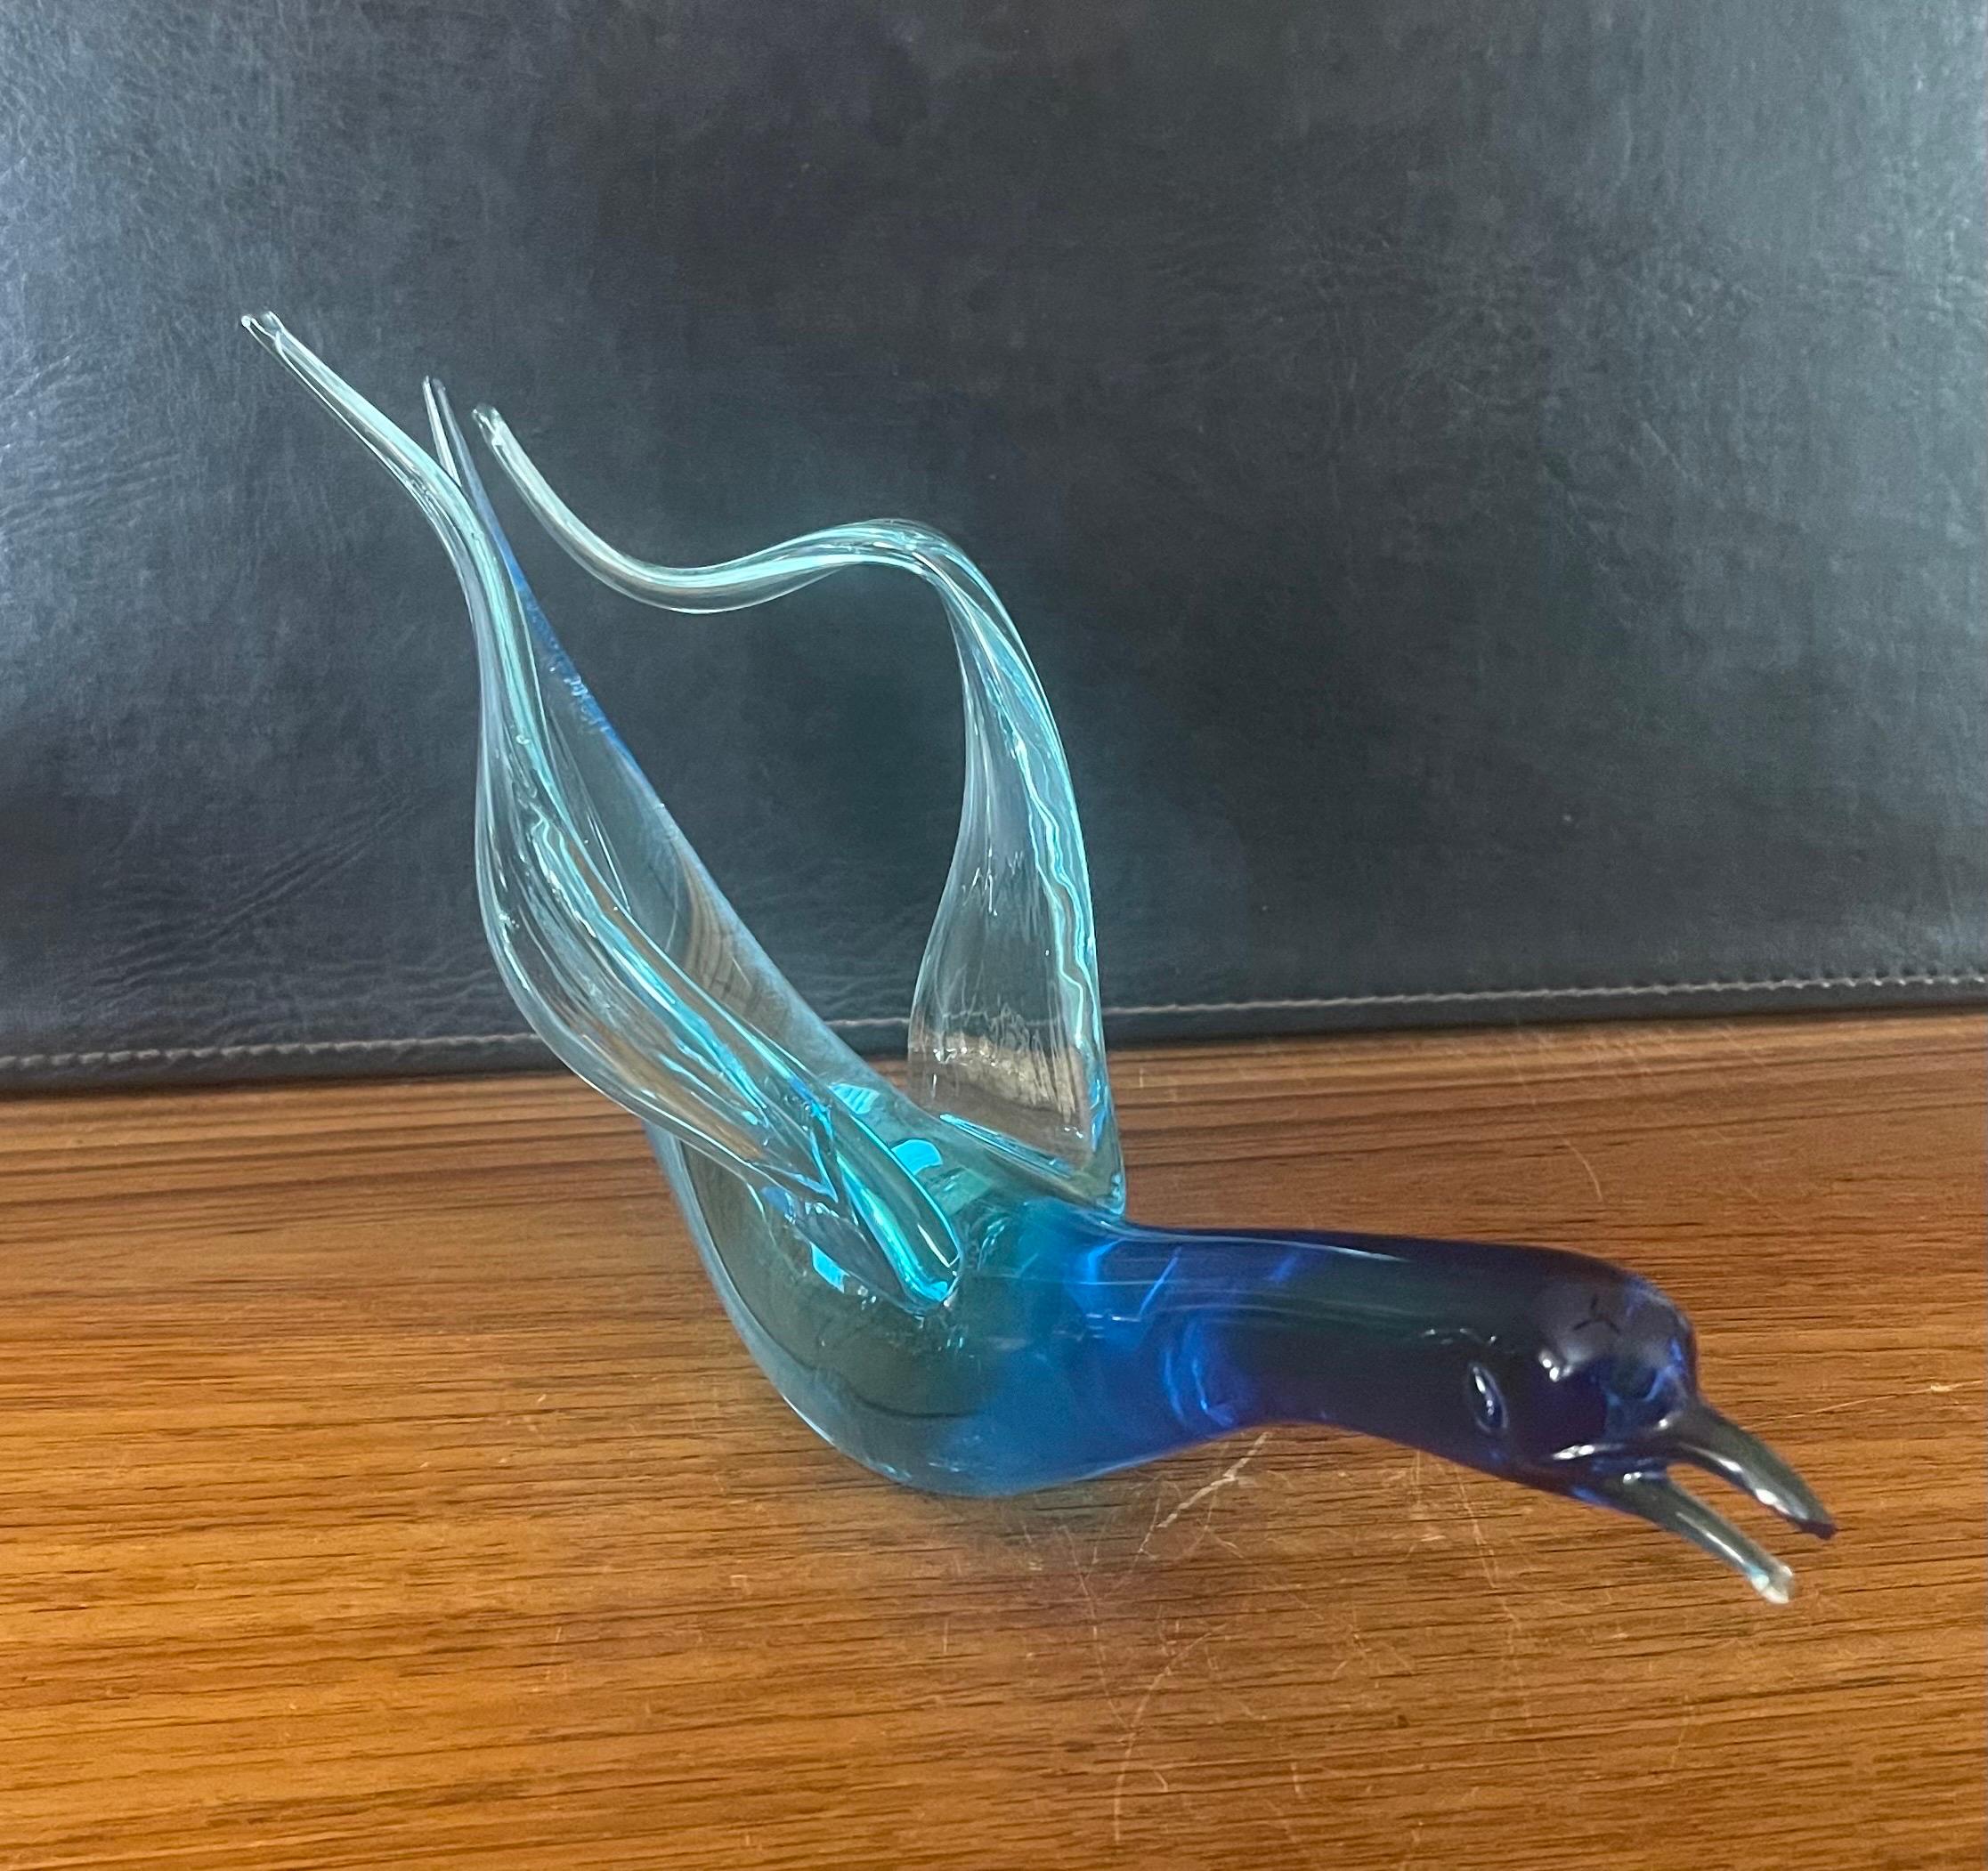 Élégante sculpture en verre d'art en forme de cygne nageur, réalisée par Murano Glass, vers les années 1980. La pièce a une merveilleuse couleur bleue profonde et est en très bon état, sans éclats ni fissures (quelques rayures sur la face